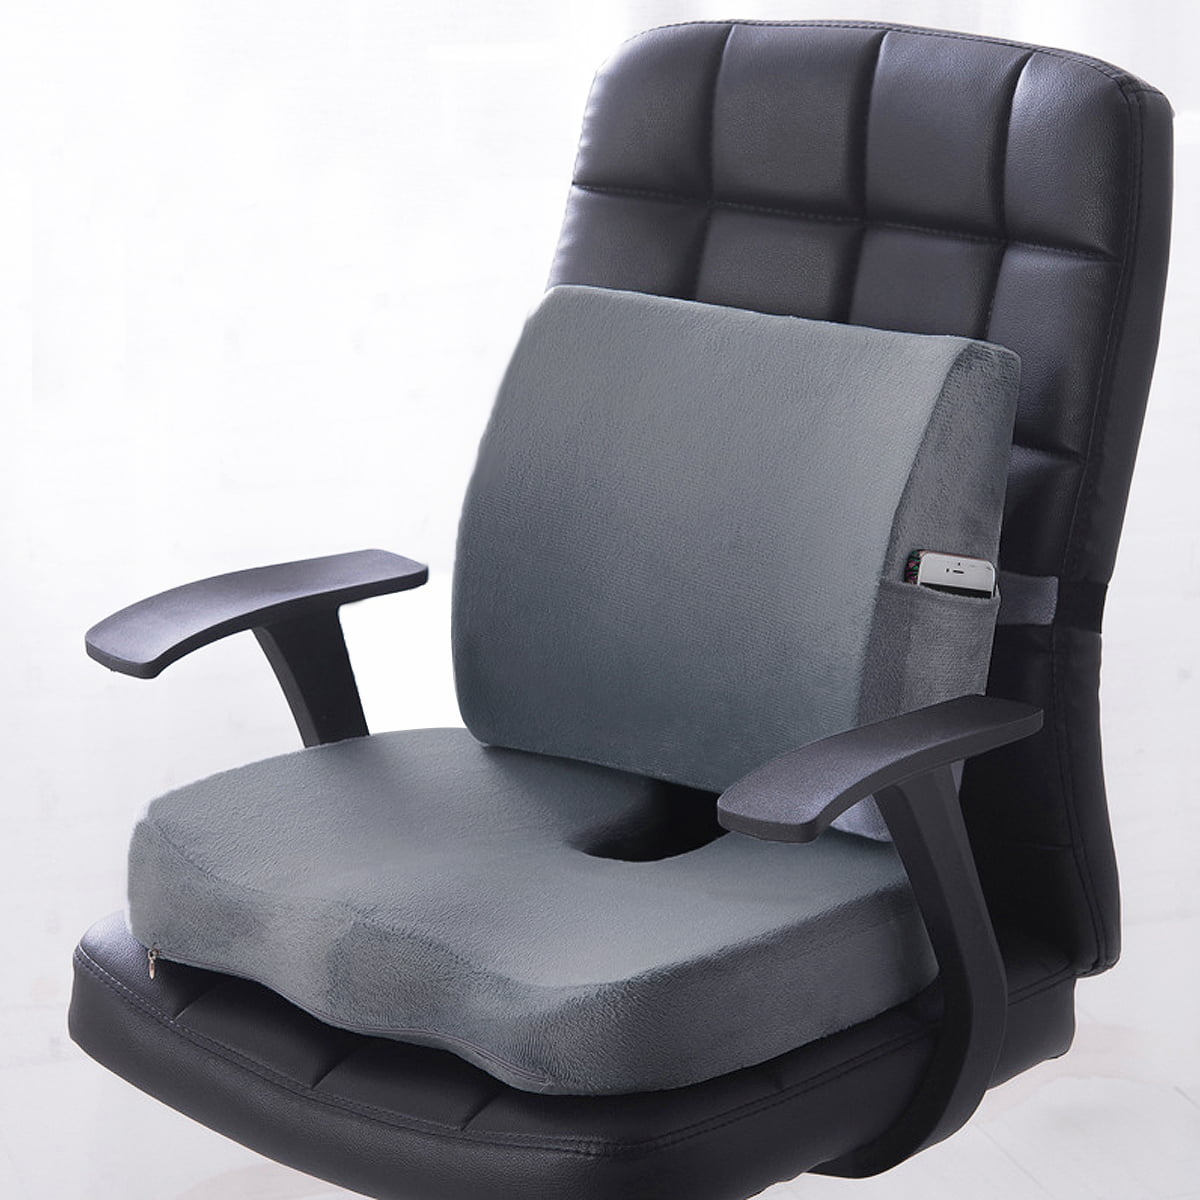 HIERA Seat Cushion Chair Cushion Meditation Cushion Coccyx Cushion Sofa Cover for 3D Coushion Couch Car Seat Cushion Office Chair Cushion Black, Mesh Cover